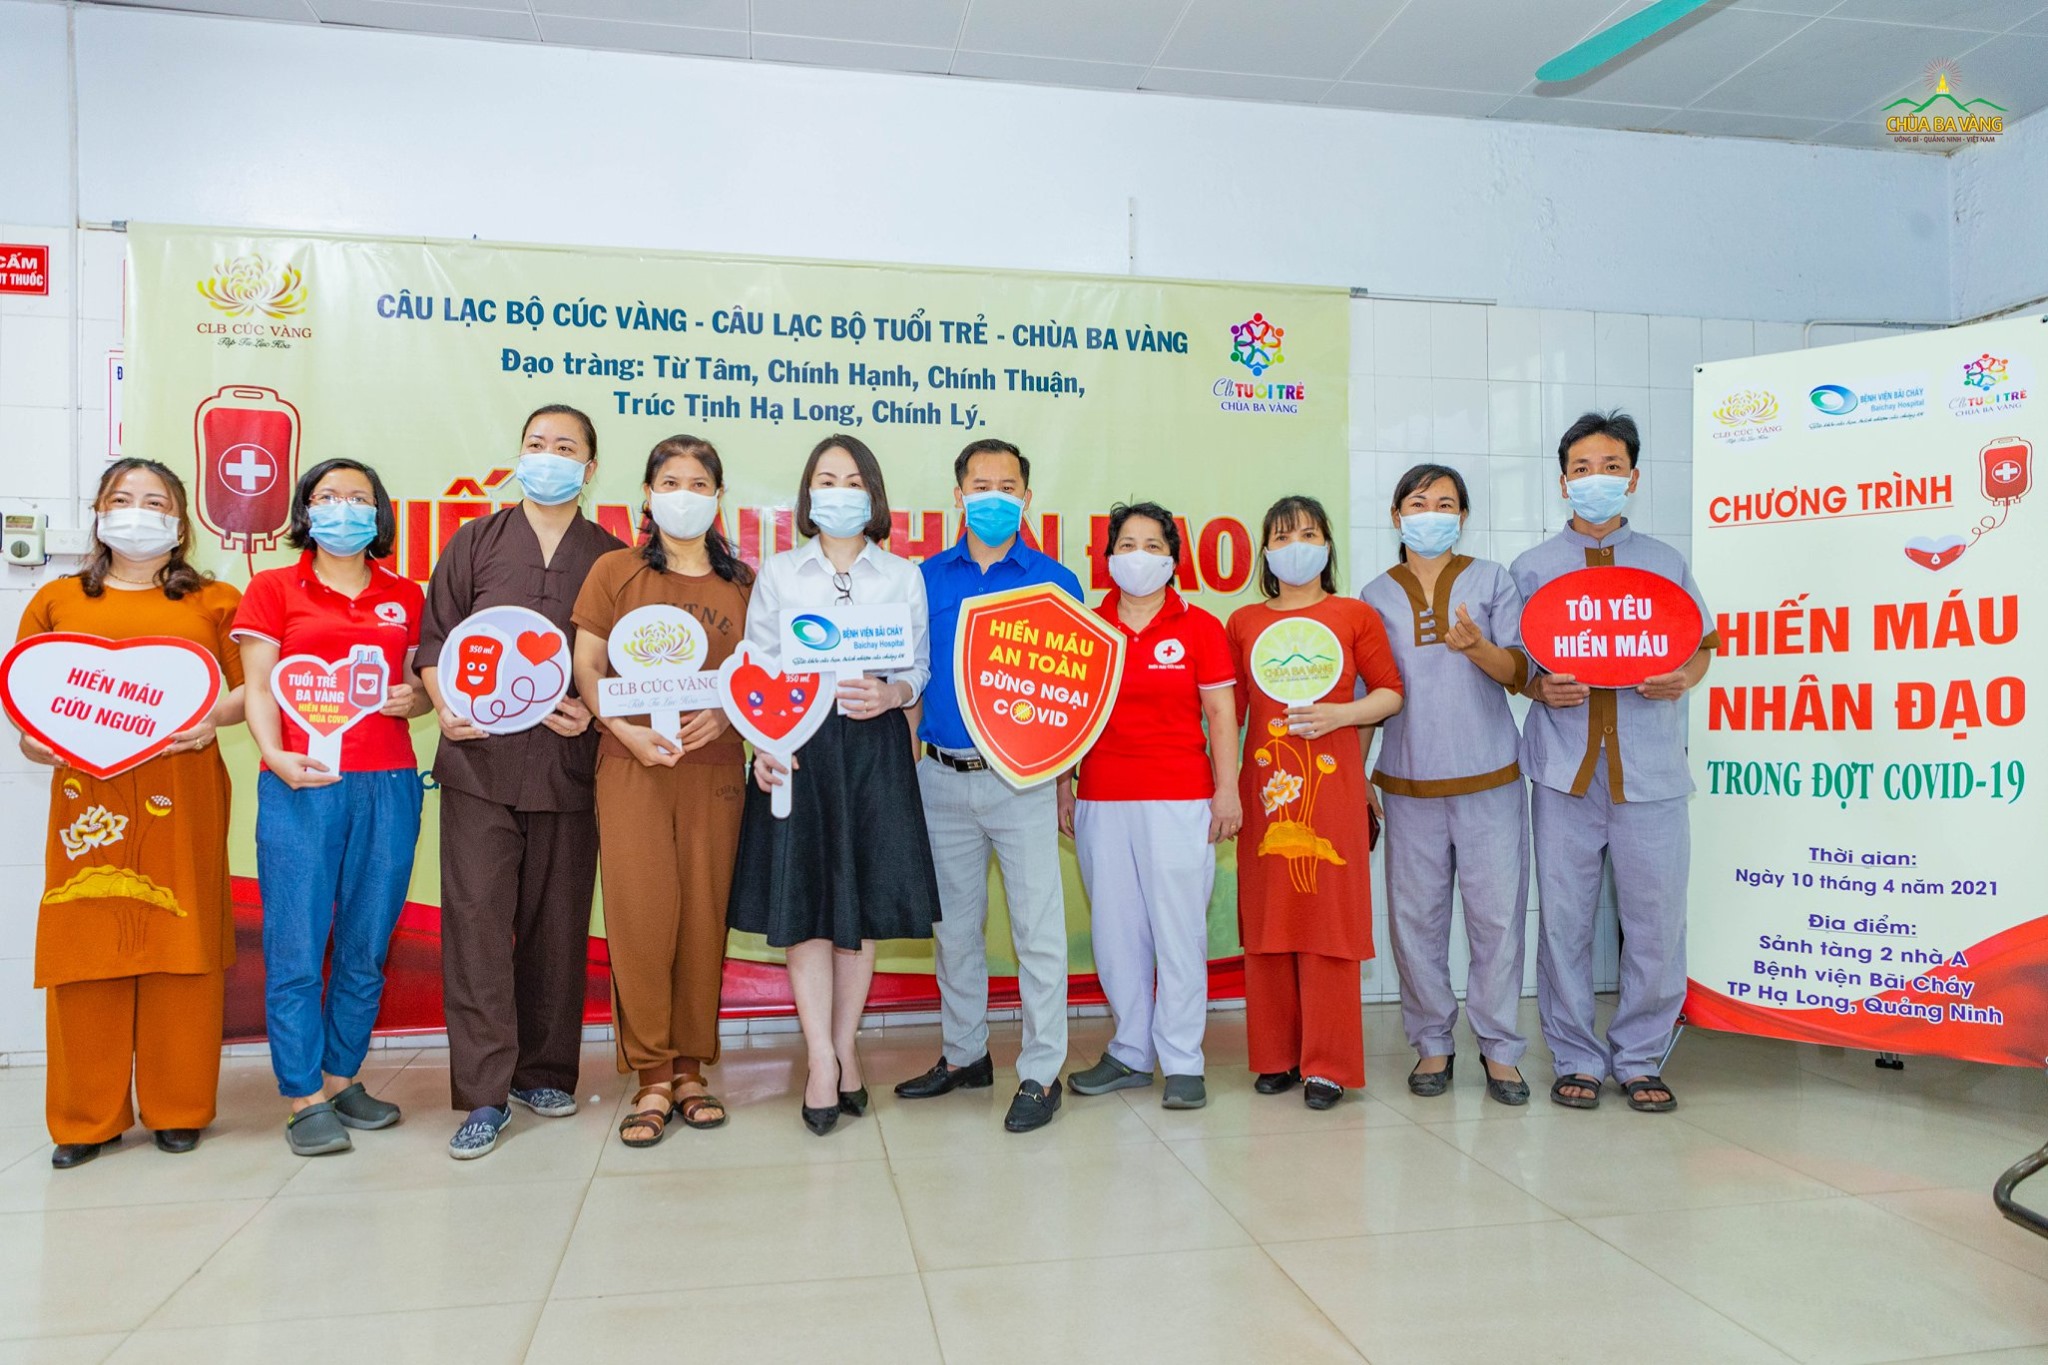 Phật tử chùa Ba Vàng chụp ảnh cùng lãnh đạo Bệnh viện Bãi Cháy và thành viên trong Câu lạc bộ Máu Sống tỉnh Quảng Ninh